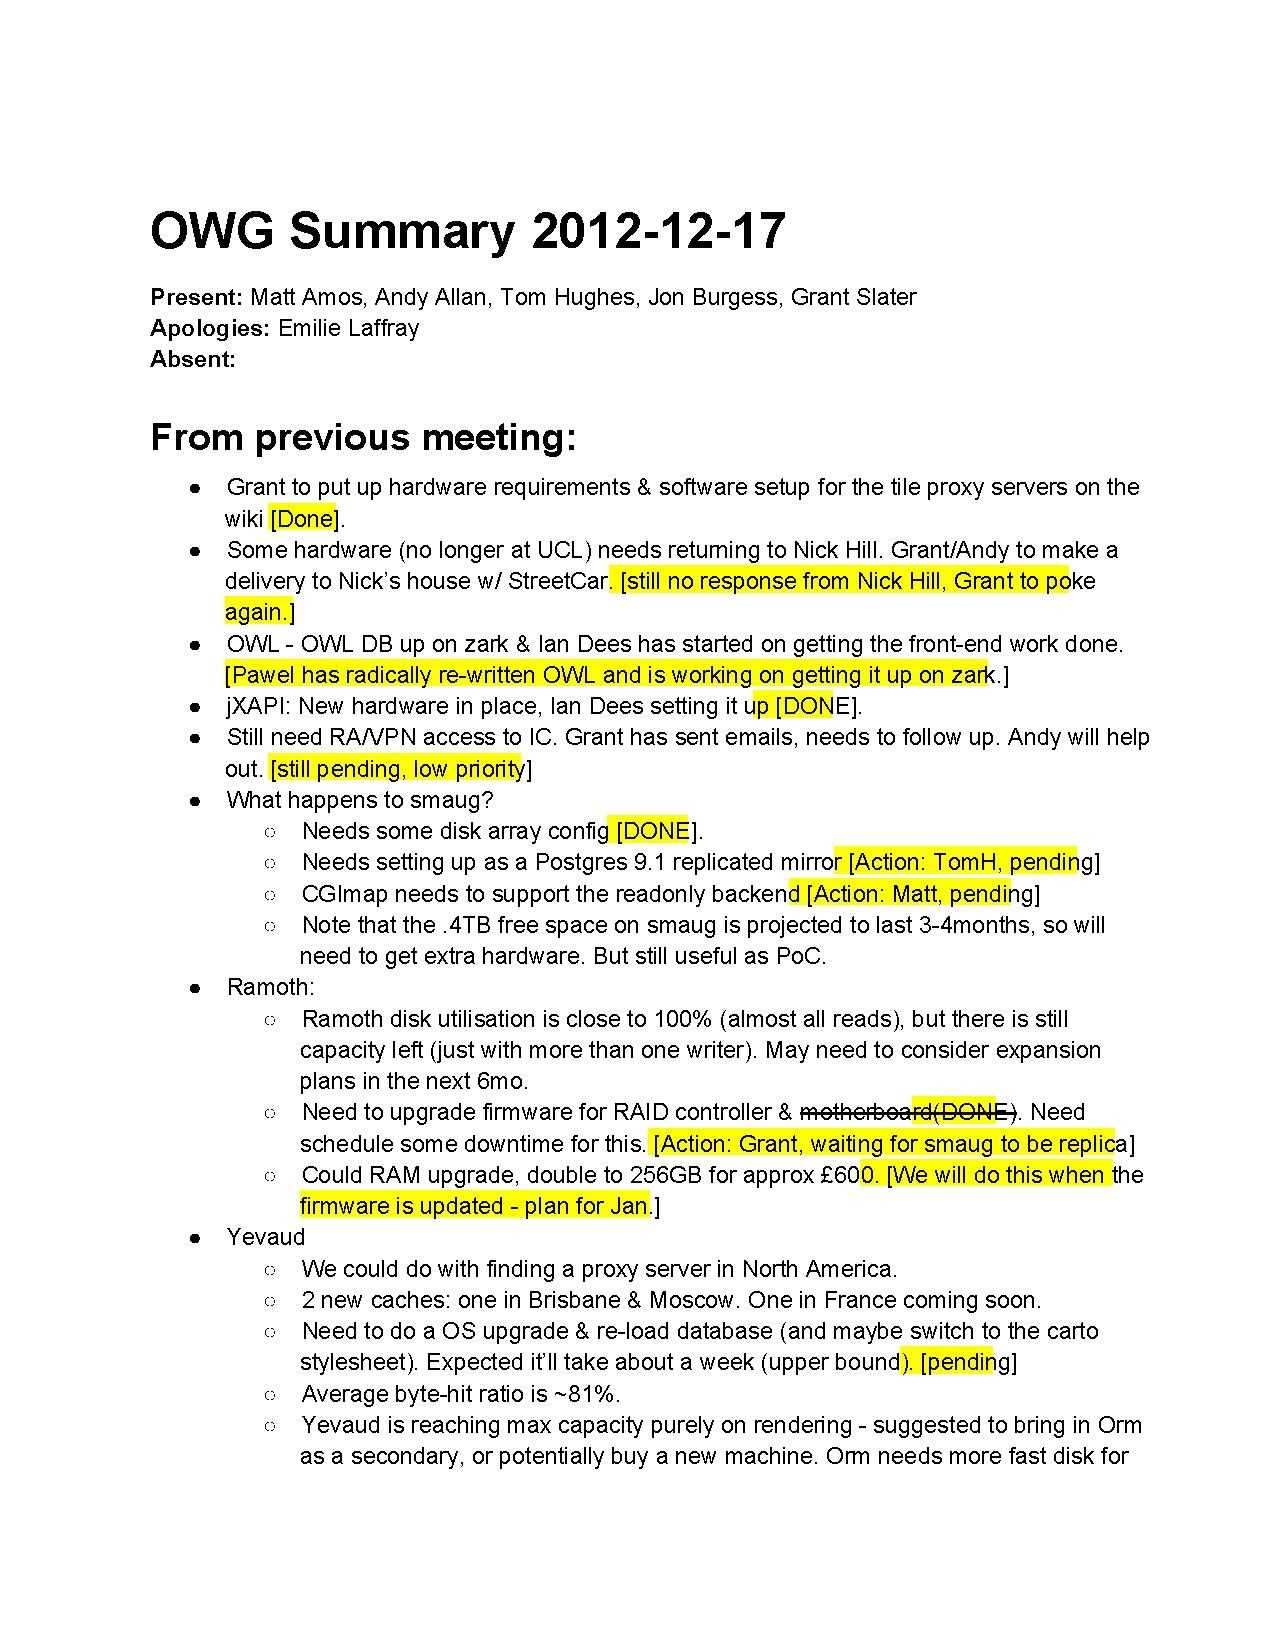 OWGSummary2012-12-17.pdf